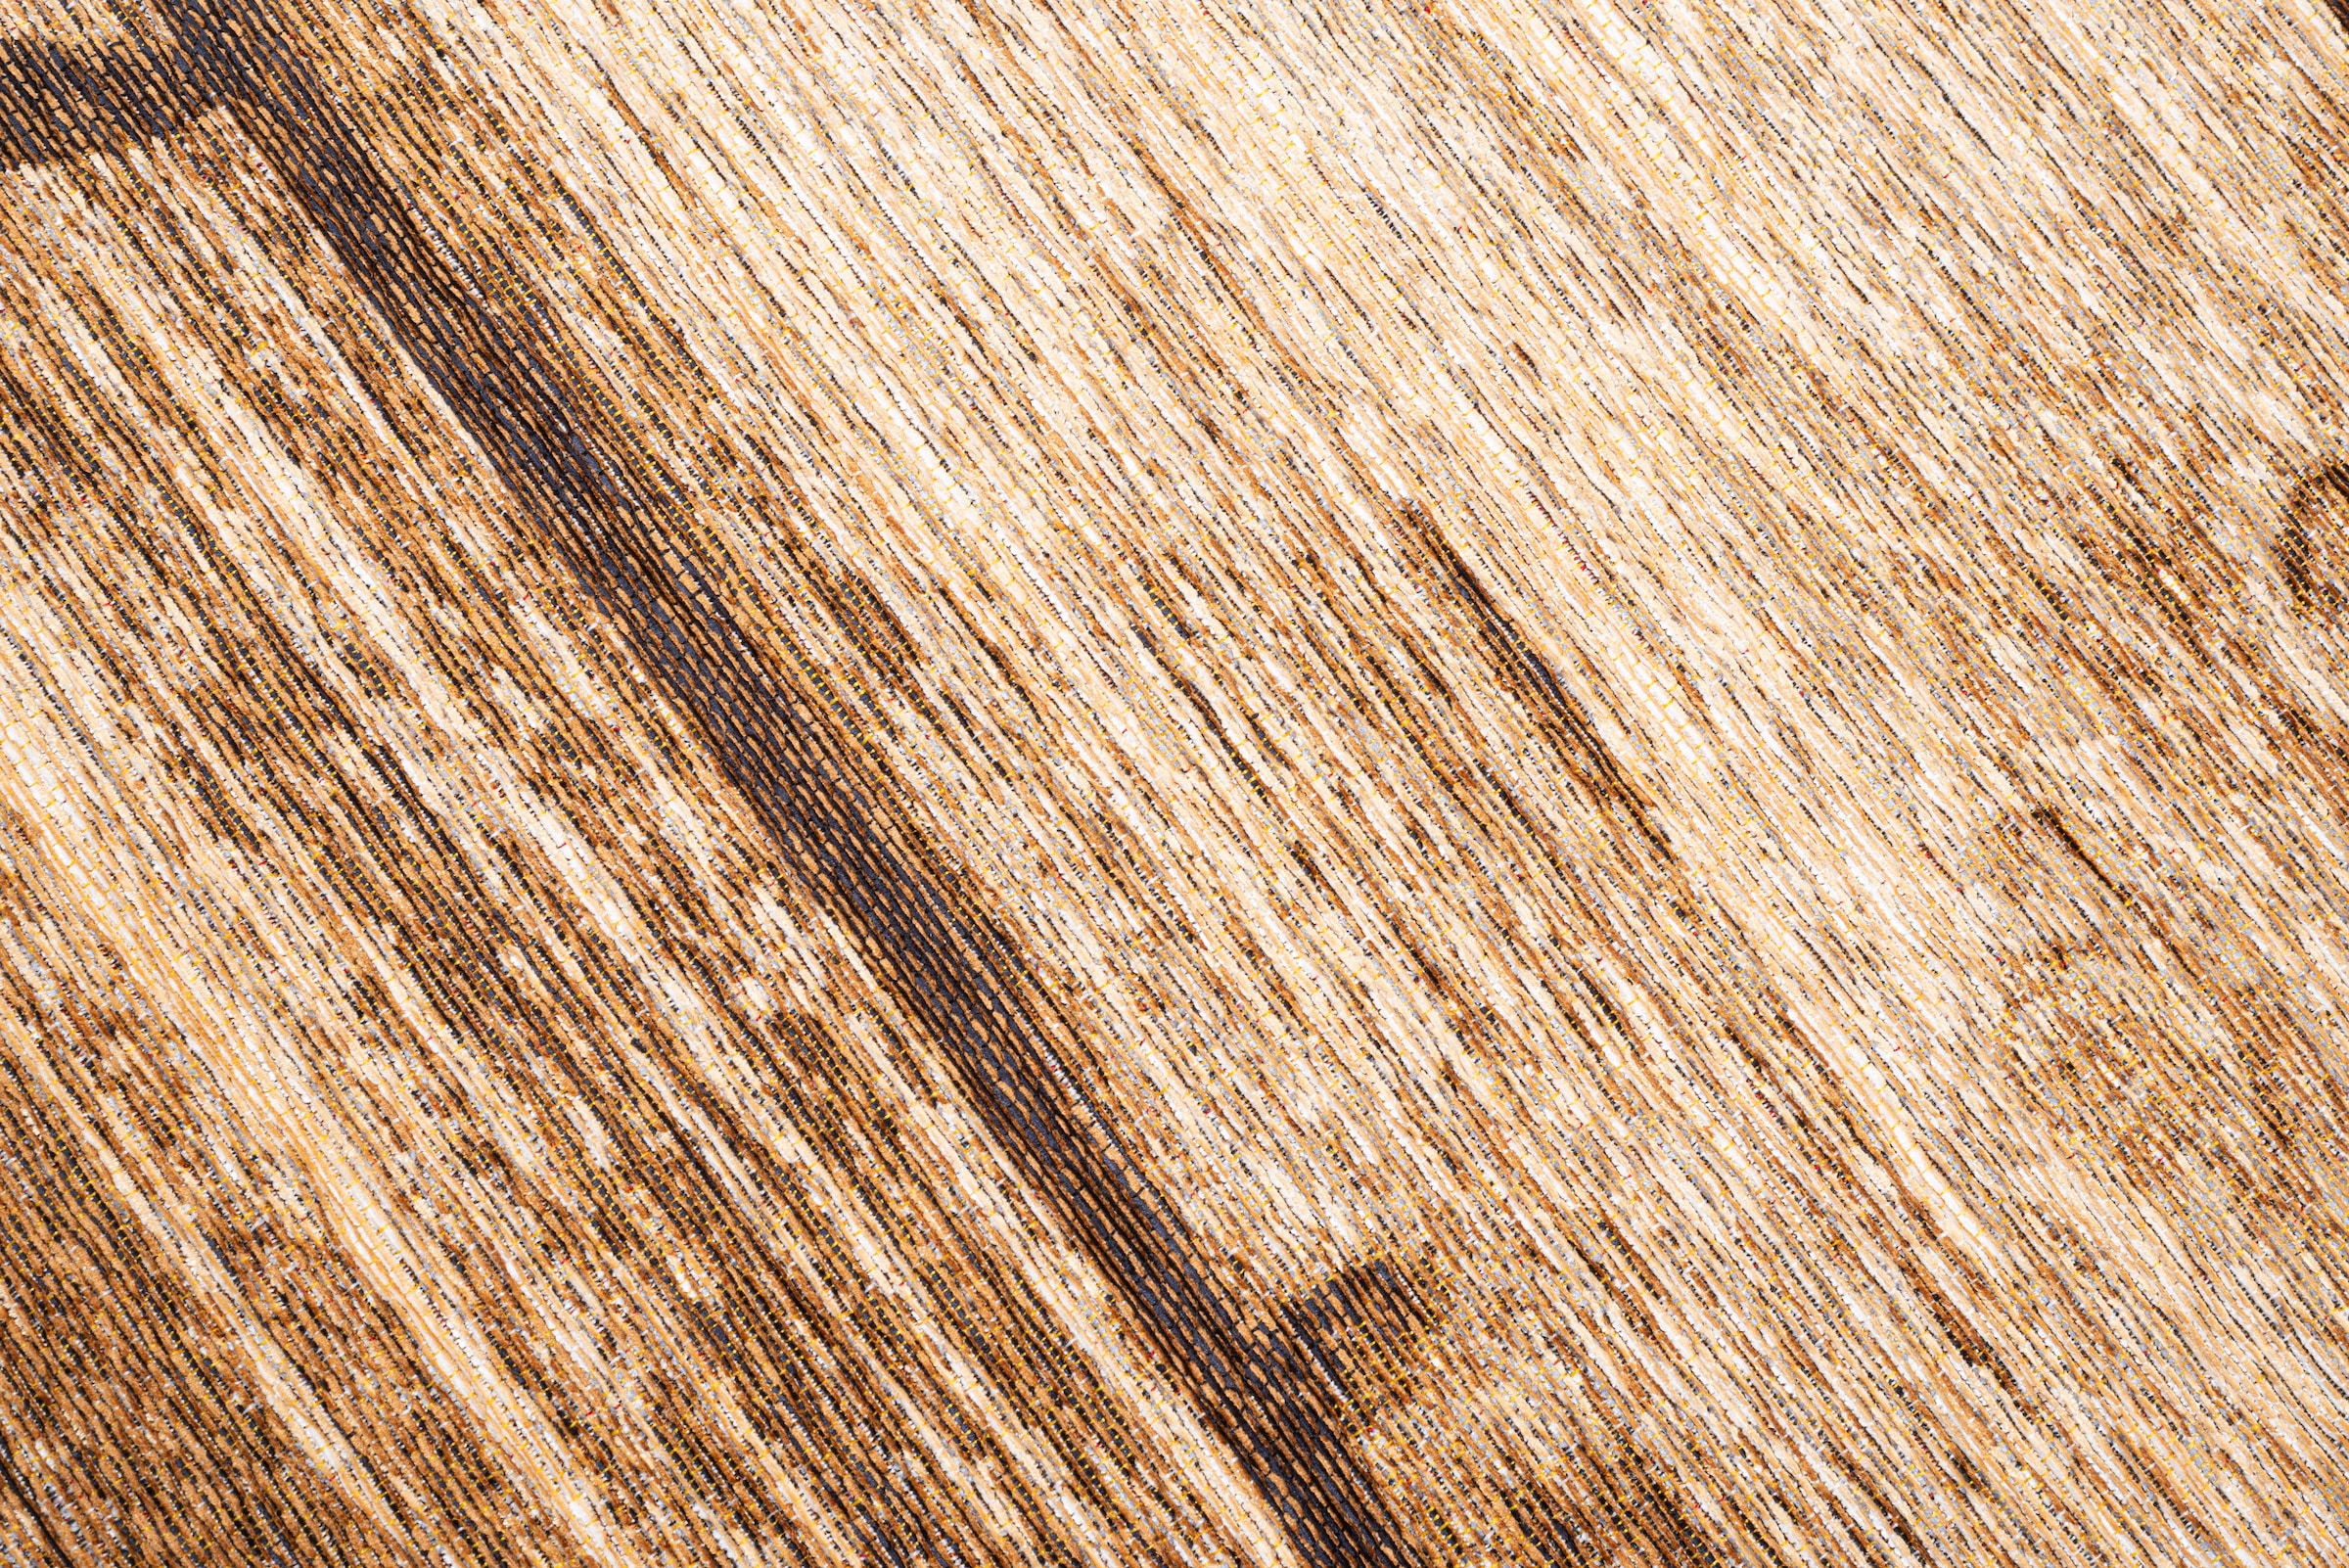 Sansibar Teppich »Keitum 009«, rechteckig, Flachgewebe, Motiv Holzdielen & gekreuzte Säbel